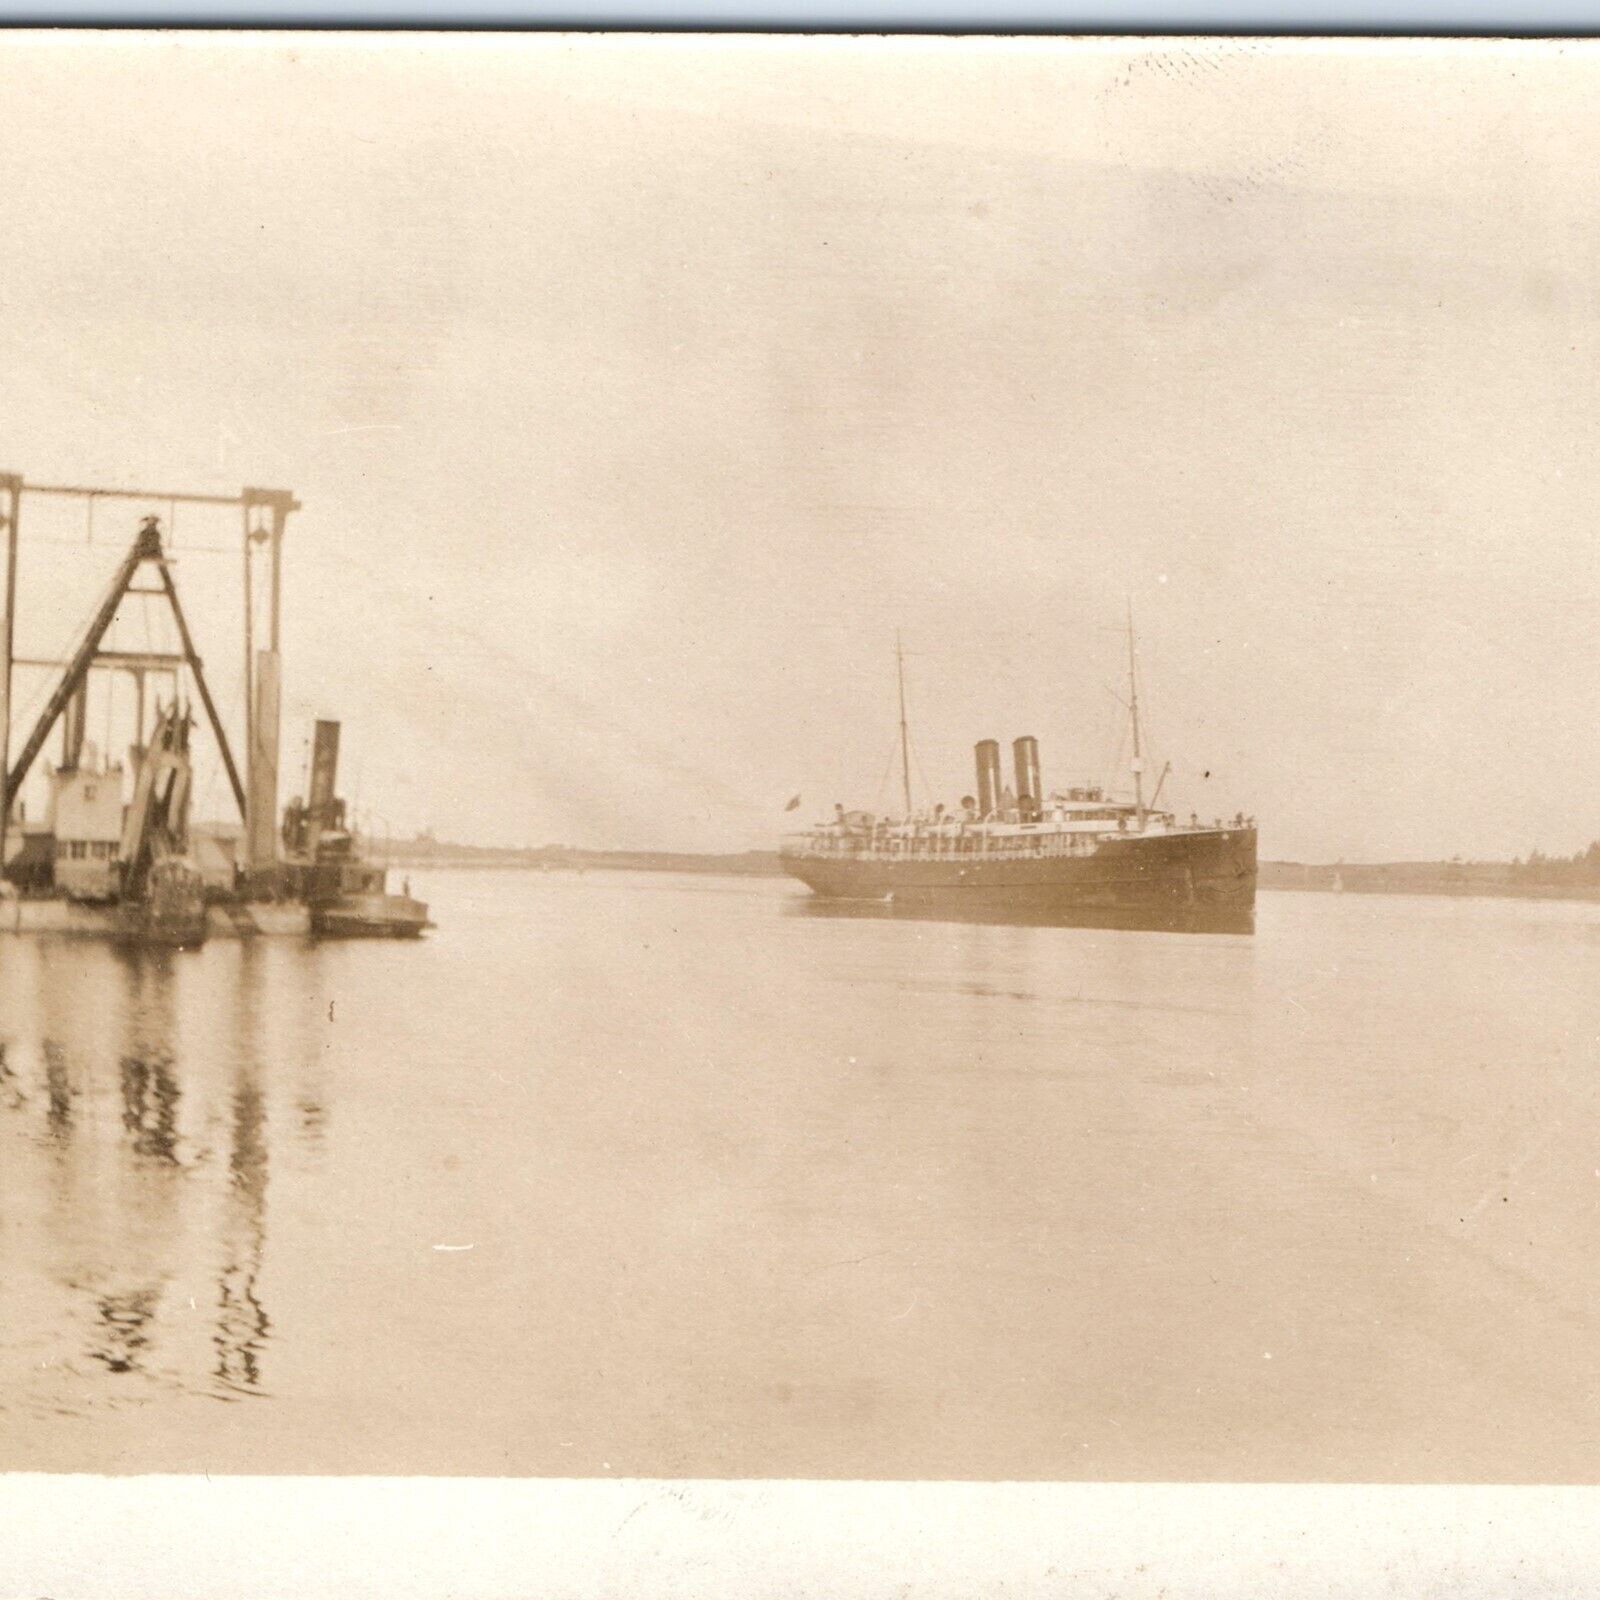 c1910s Steamship in River RPPC Steam Dredge Steamer Tug Real Photo Postcard A125